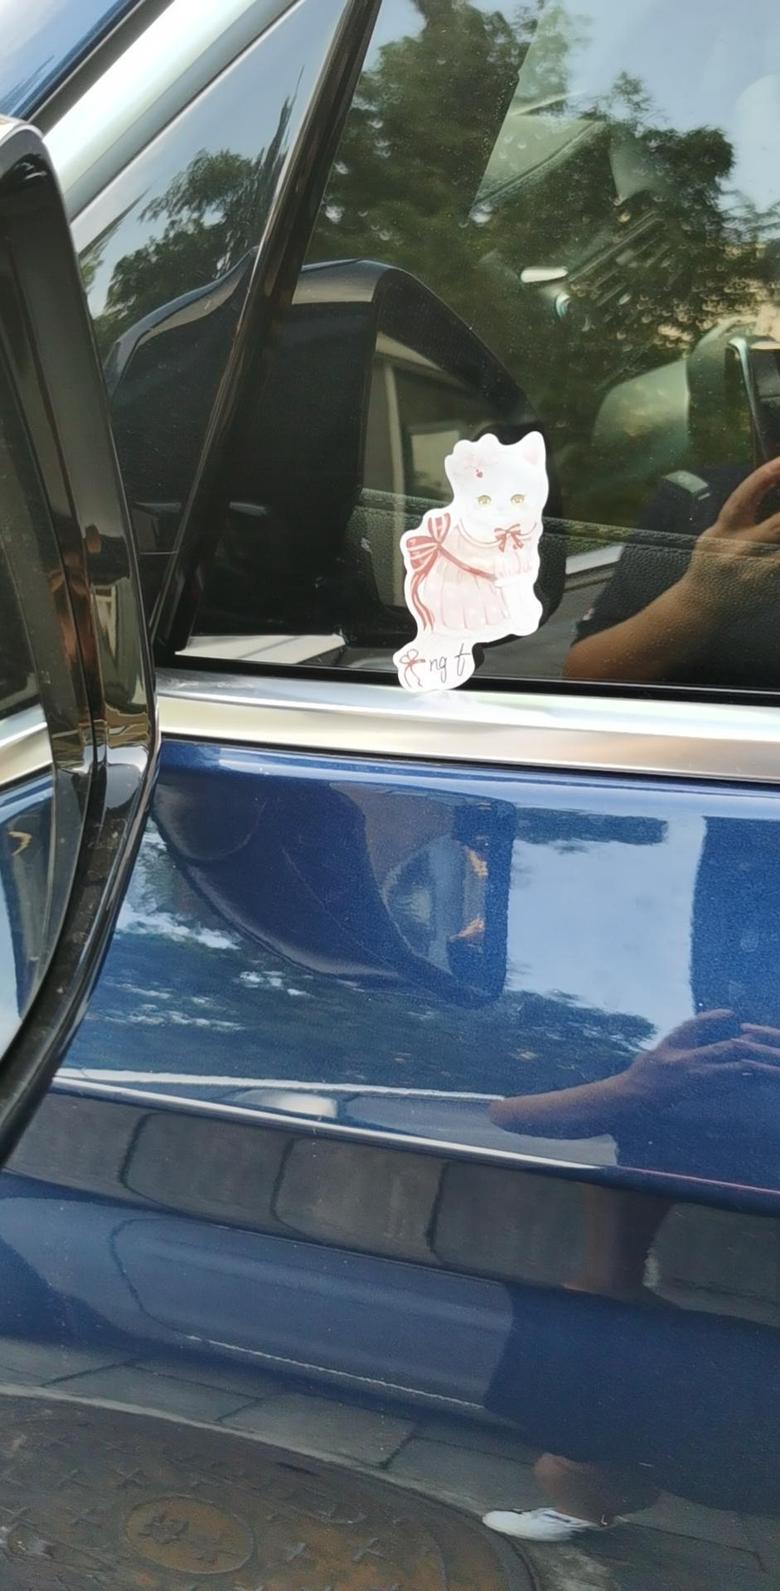 宝马x3 请教各位大神我的车经常晚上被人贴上小猫图案的纸什么意思？